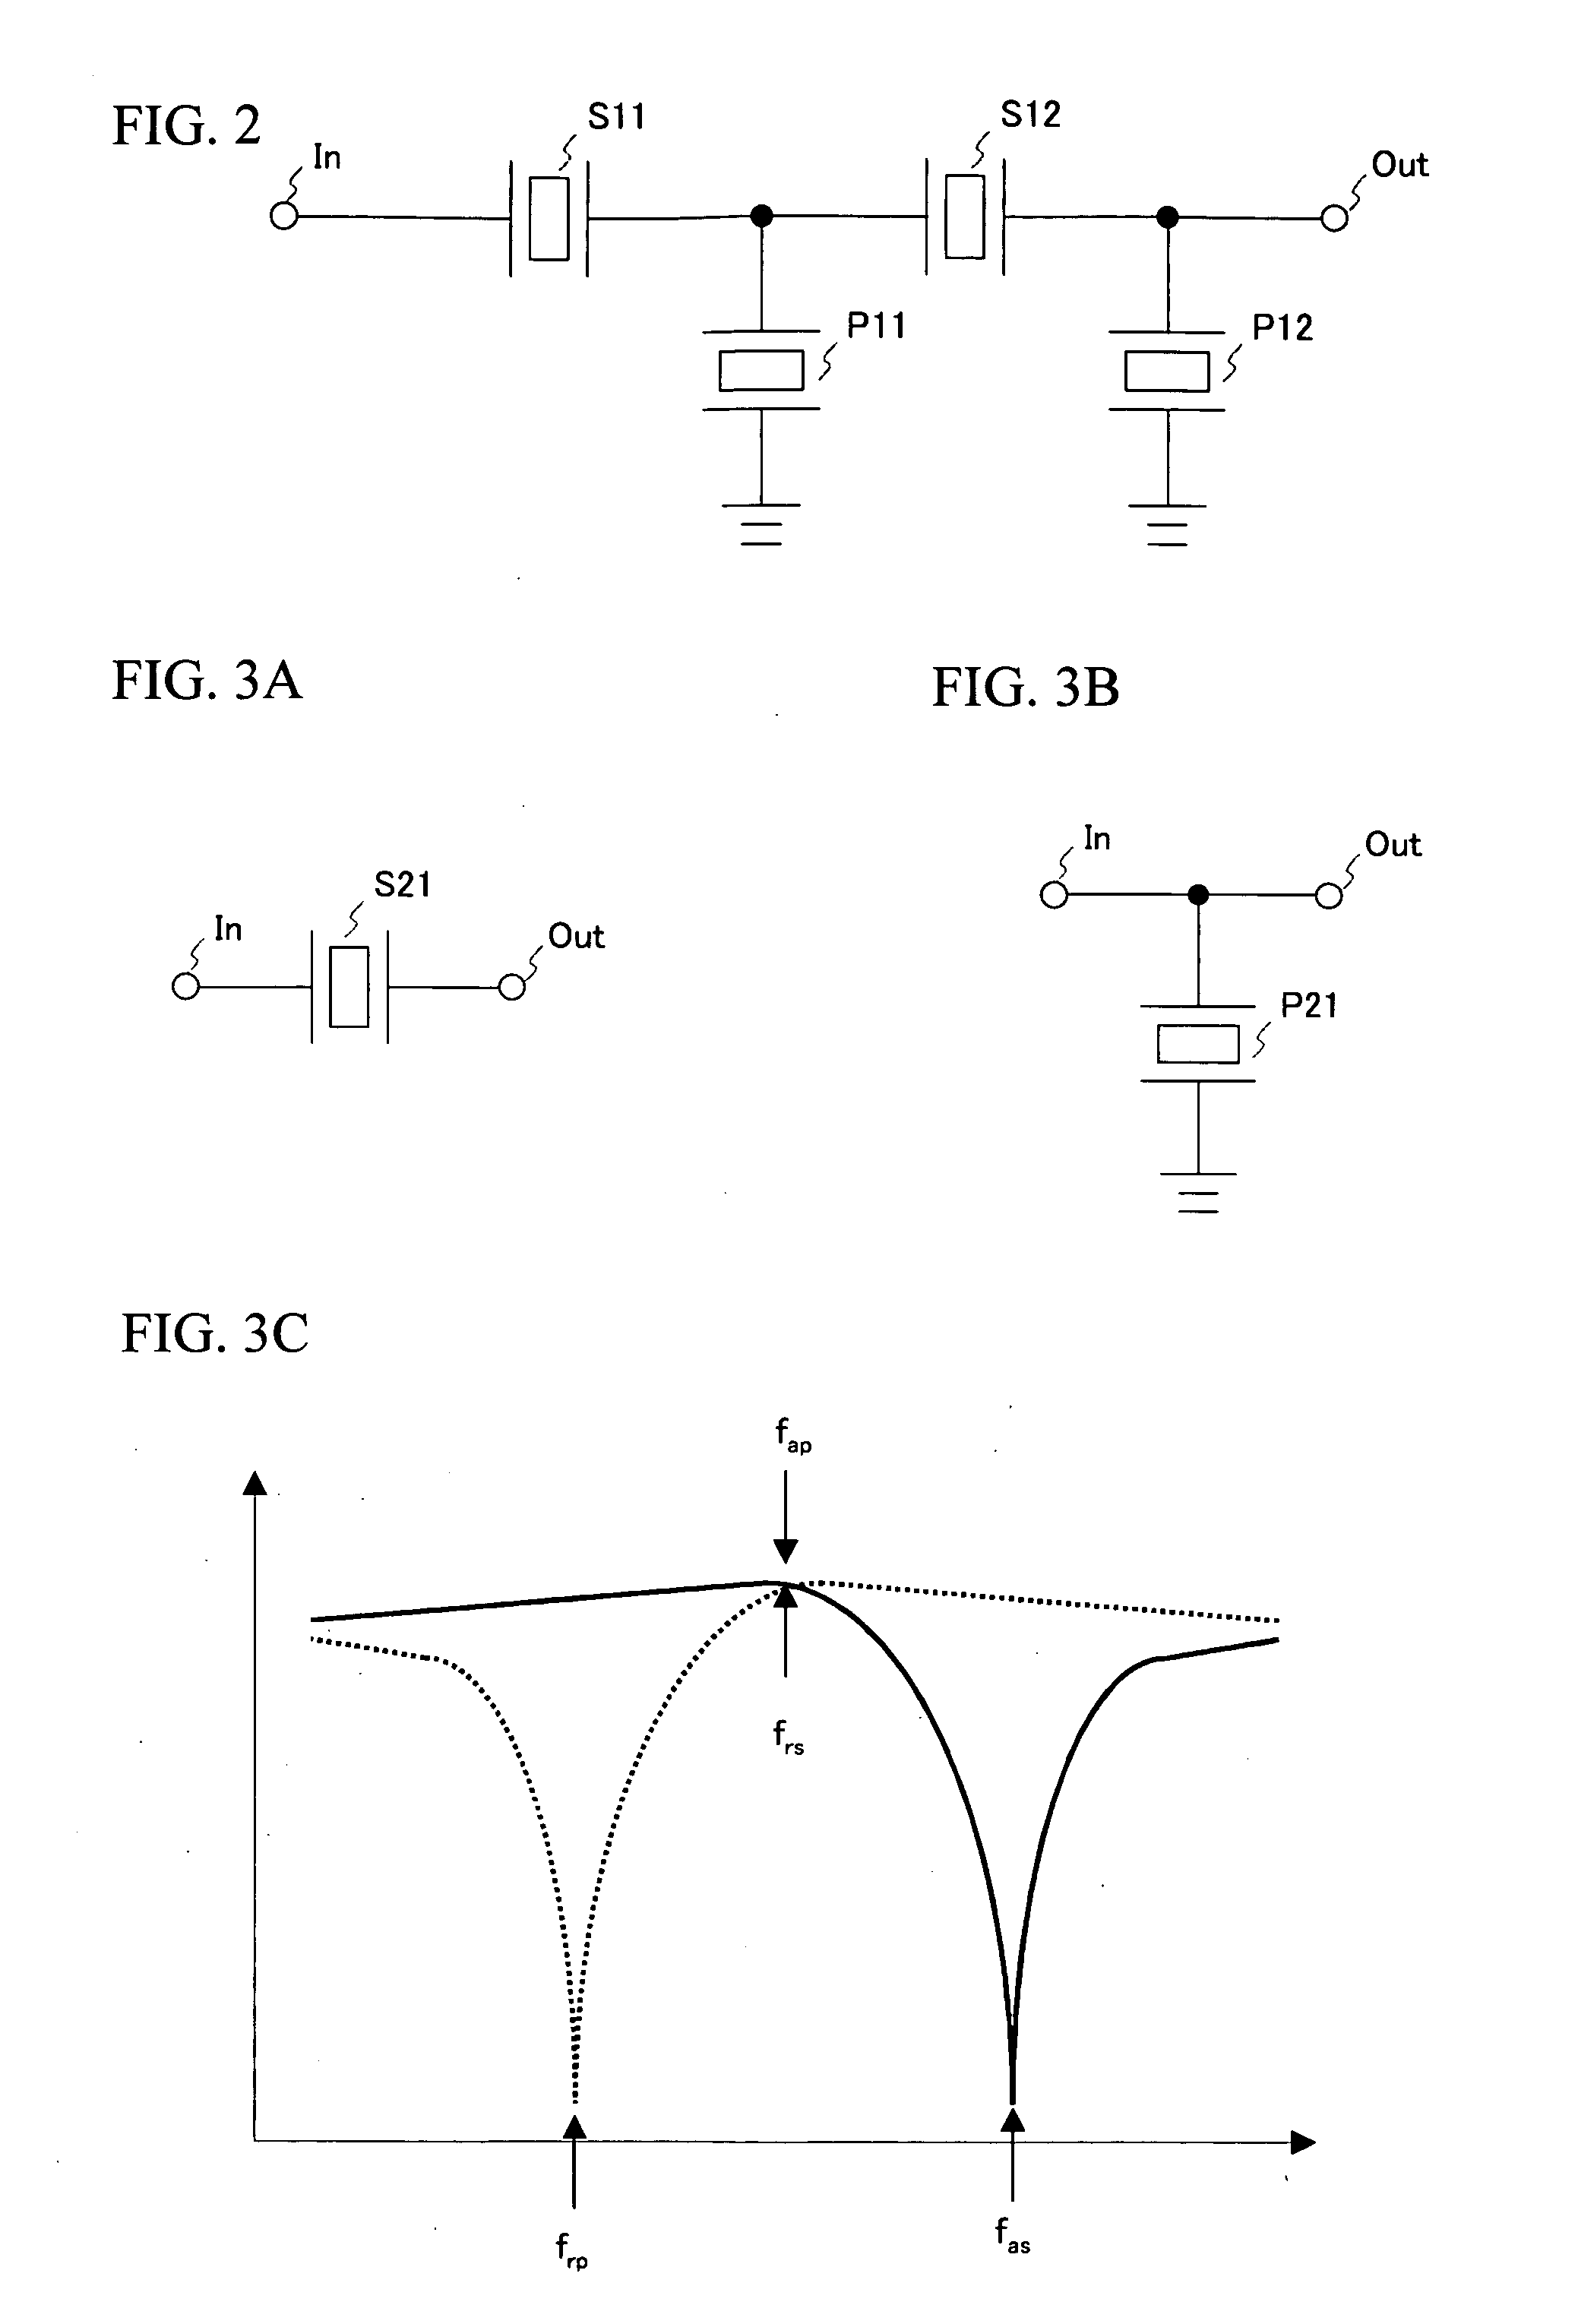 Filter and antenna duplexer